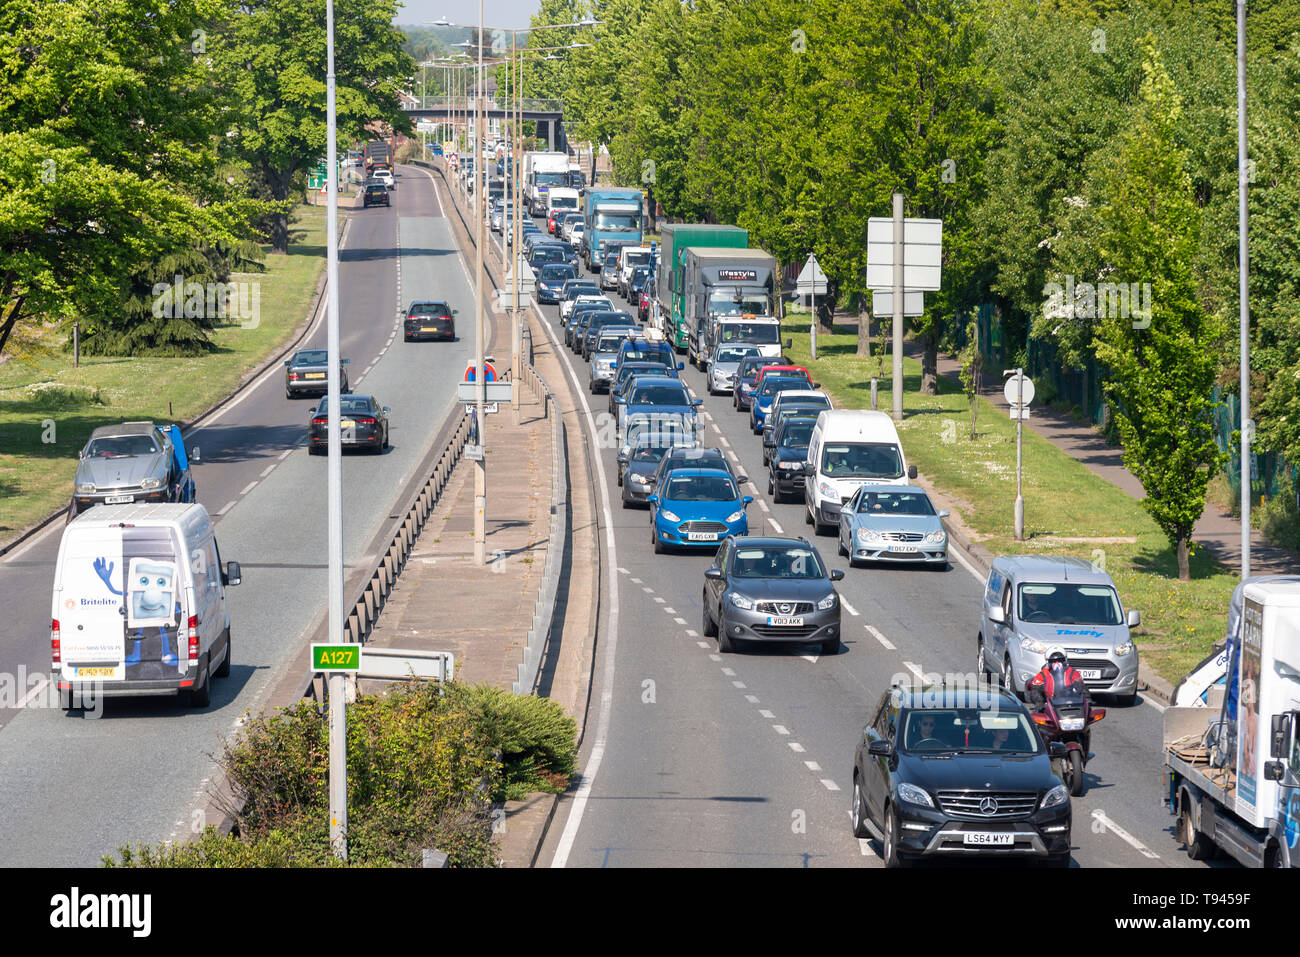 Colas de tráfico en la A127 hacia Southend on Mar, Essex, Reino Unido en un día soleado. Prince Avenue en el Bell junction. Carretera transitada. Hold up Foto de stock